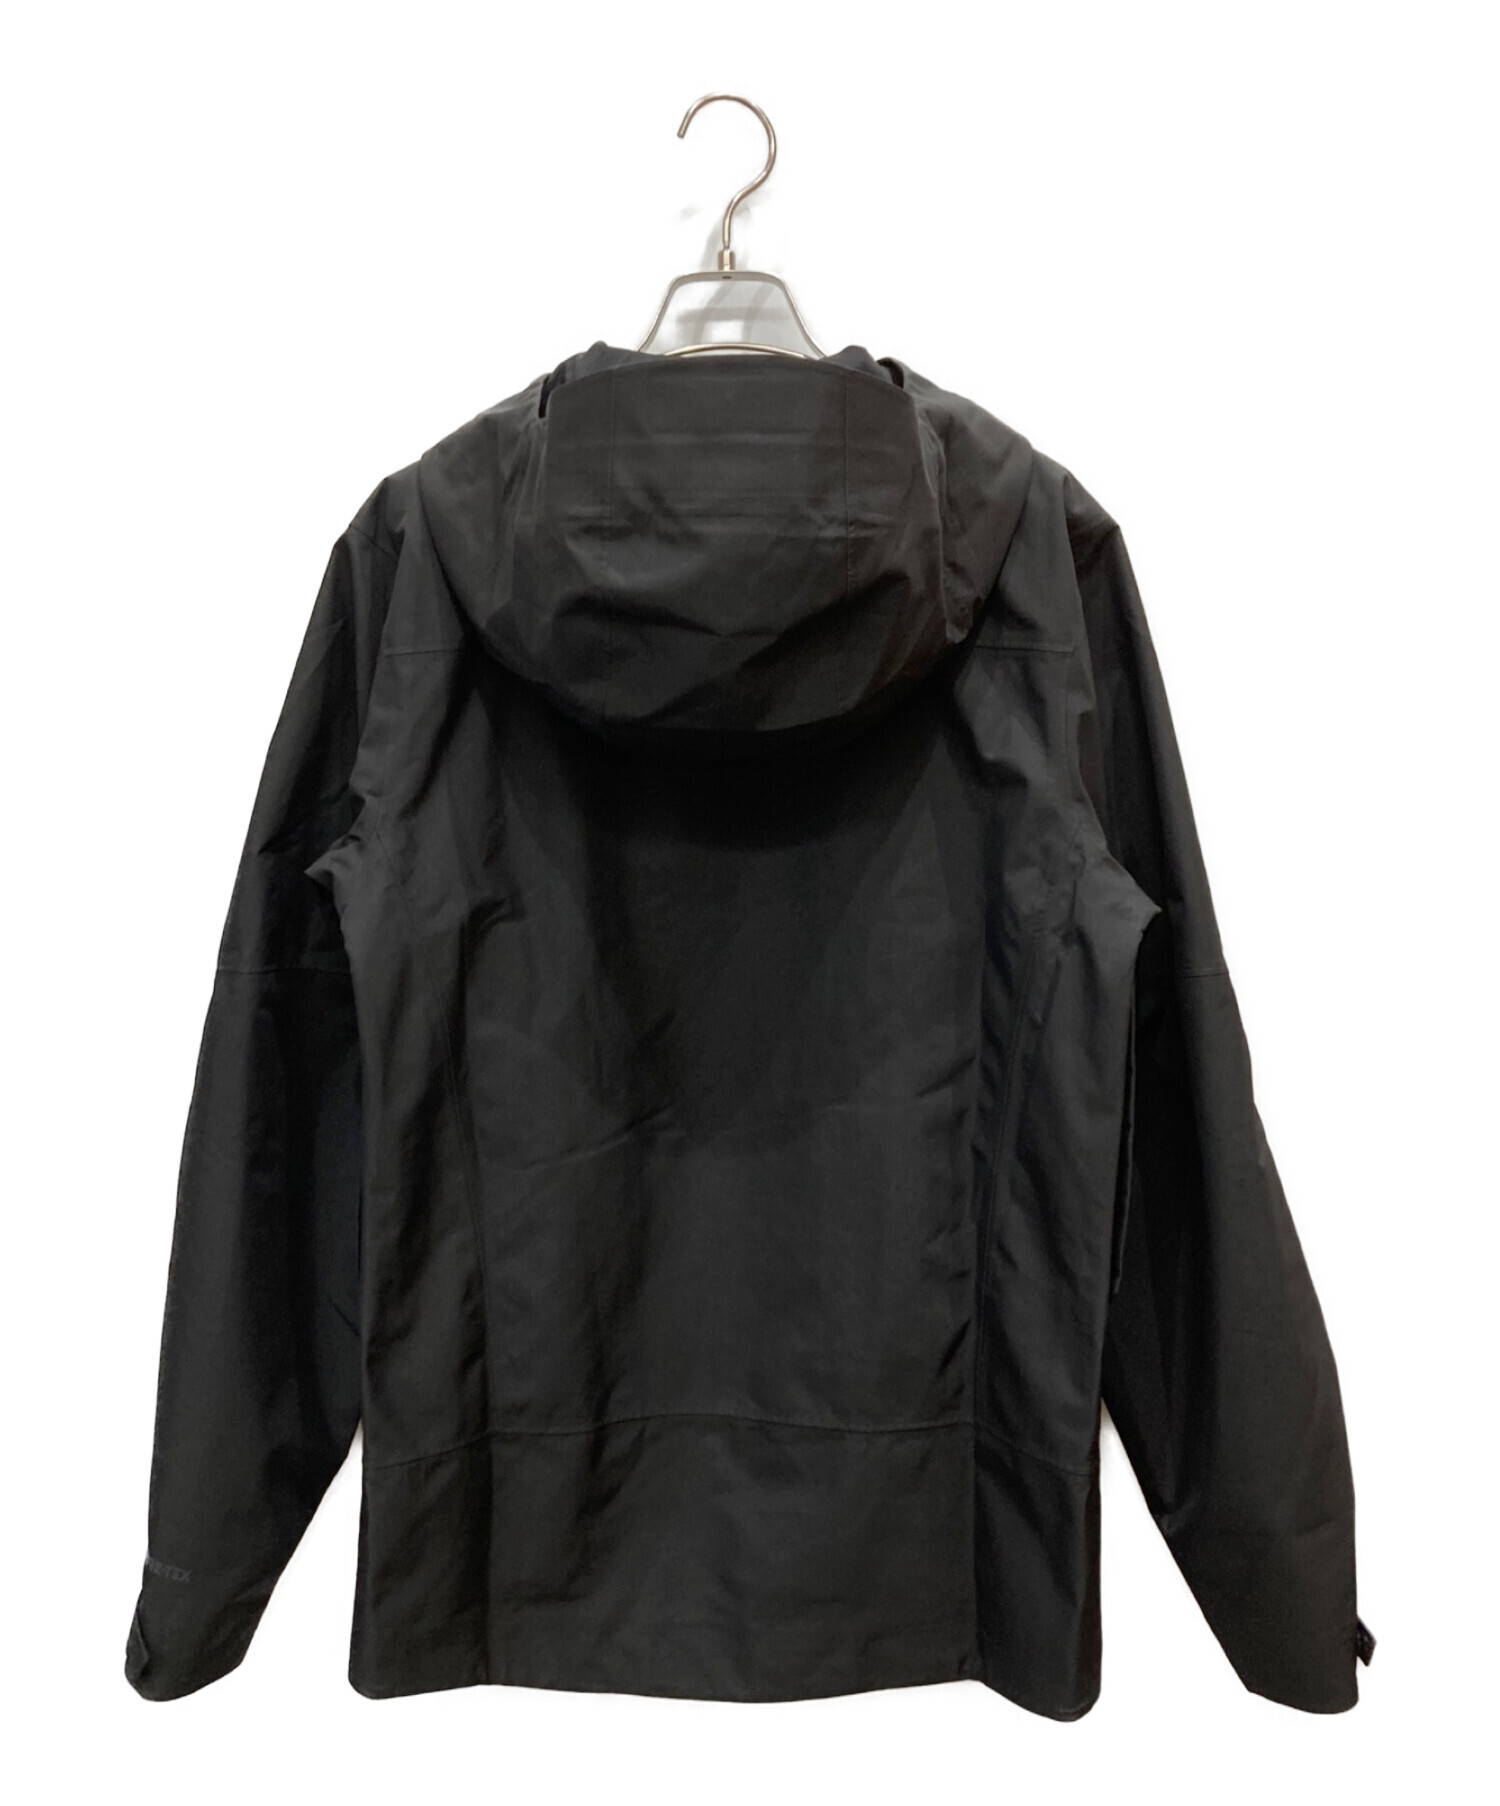 Patagonia (パタゴニア) ストームシフトジャケット ブラック サイズ:XS